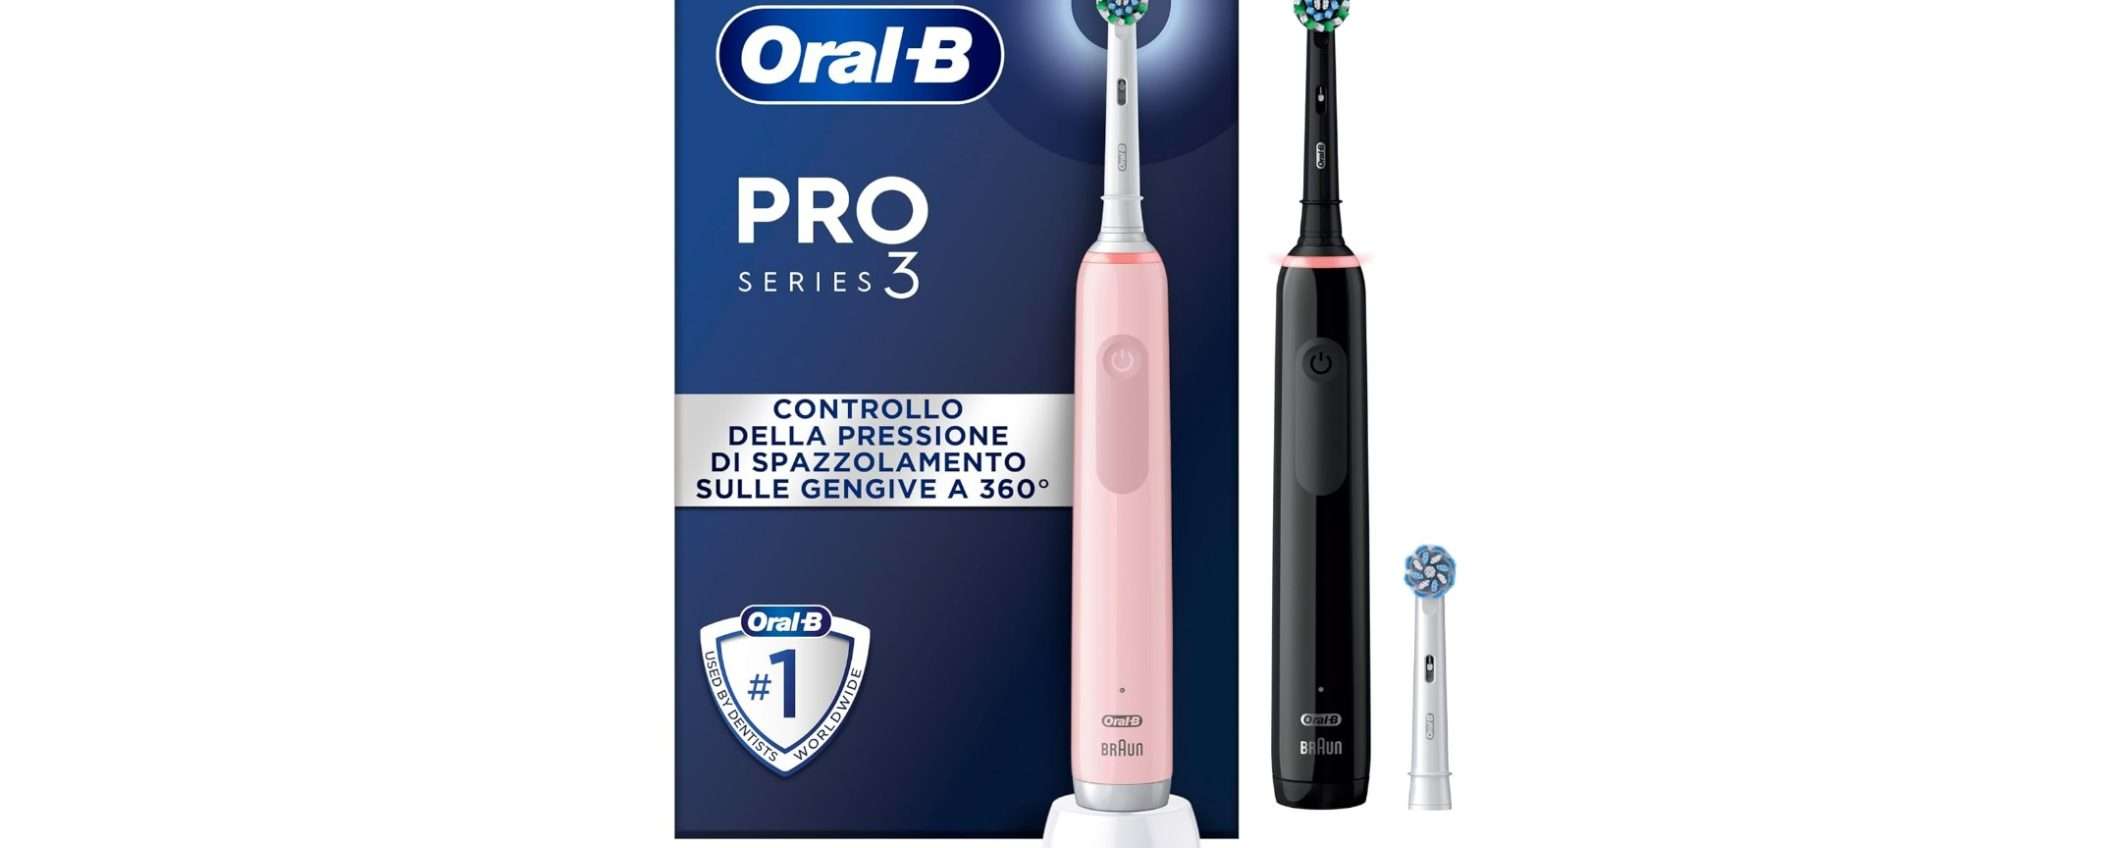 Acquista due spazzolini elettrici Oral-B al prezzo di uno su Amazon: sconto del 16%